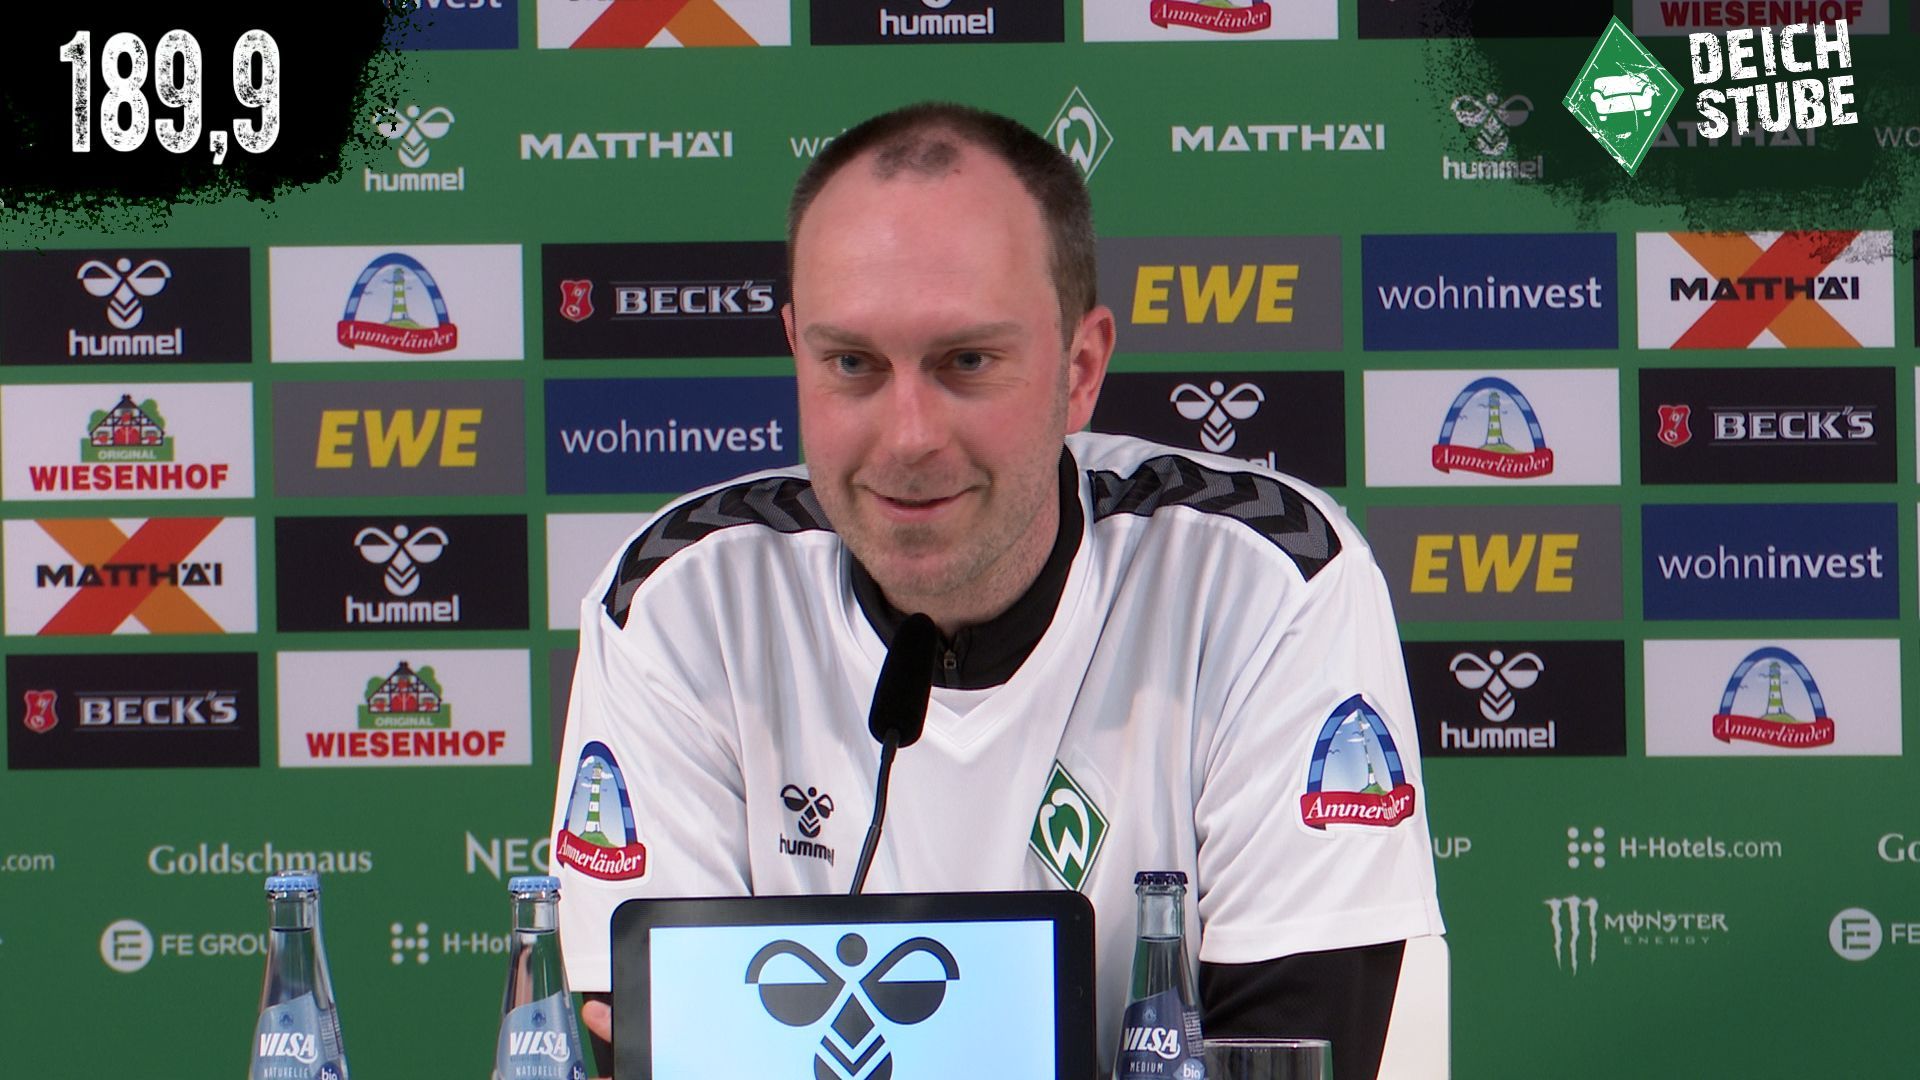 Vor Werder Bremen gegen den VfL Wolfsburg: Die Highlights der Pressekonferenz in 189,9 Sekunden!